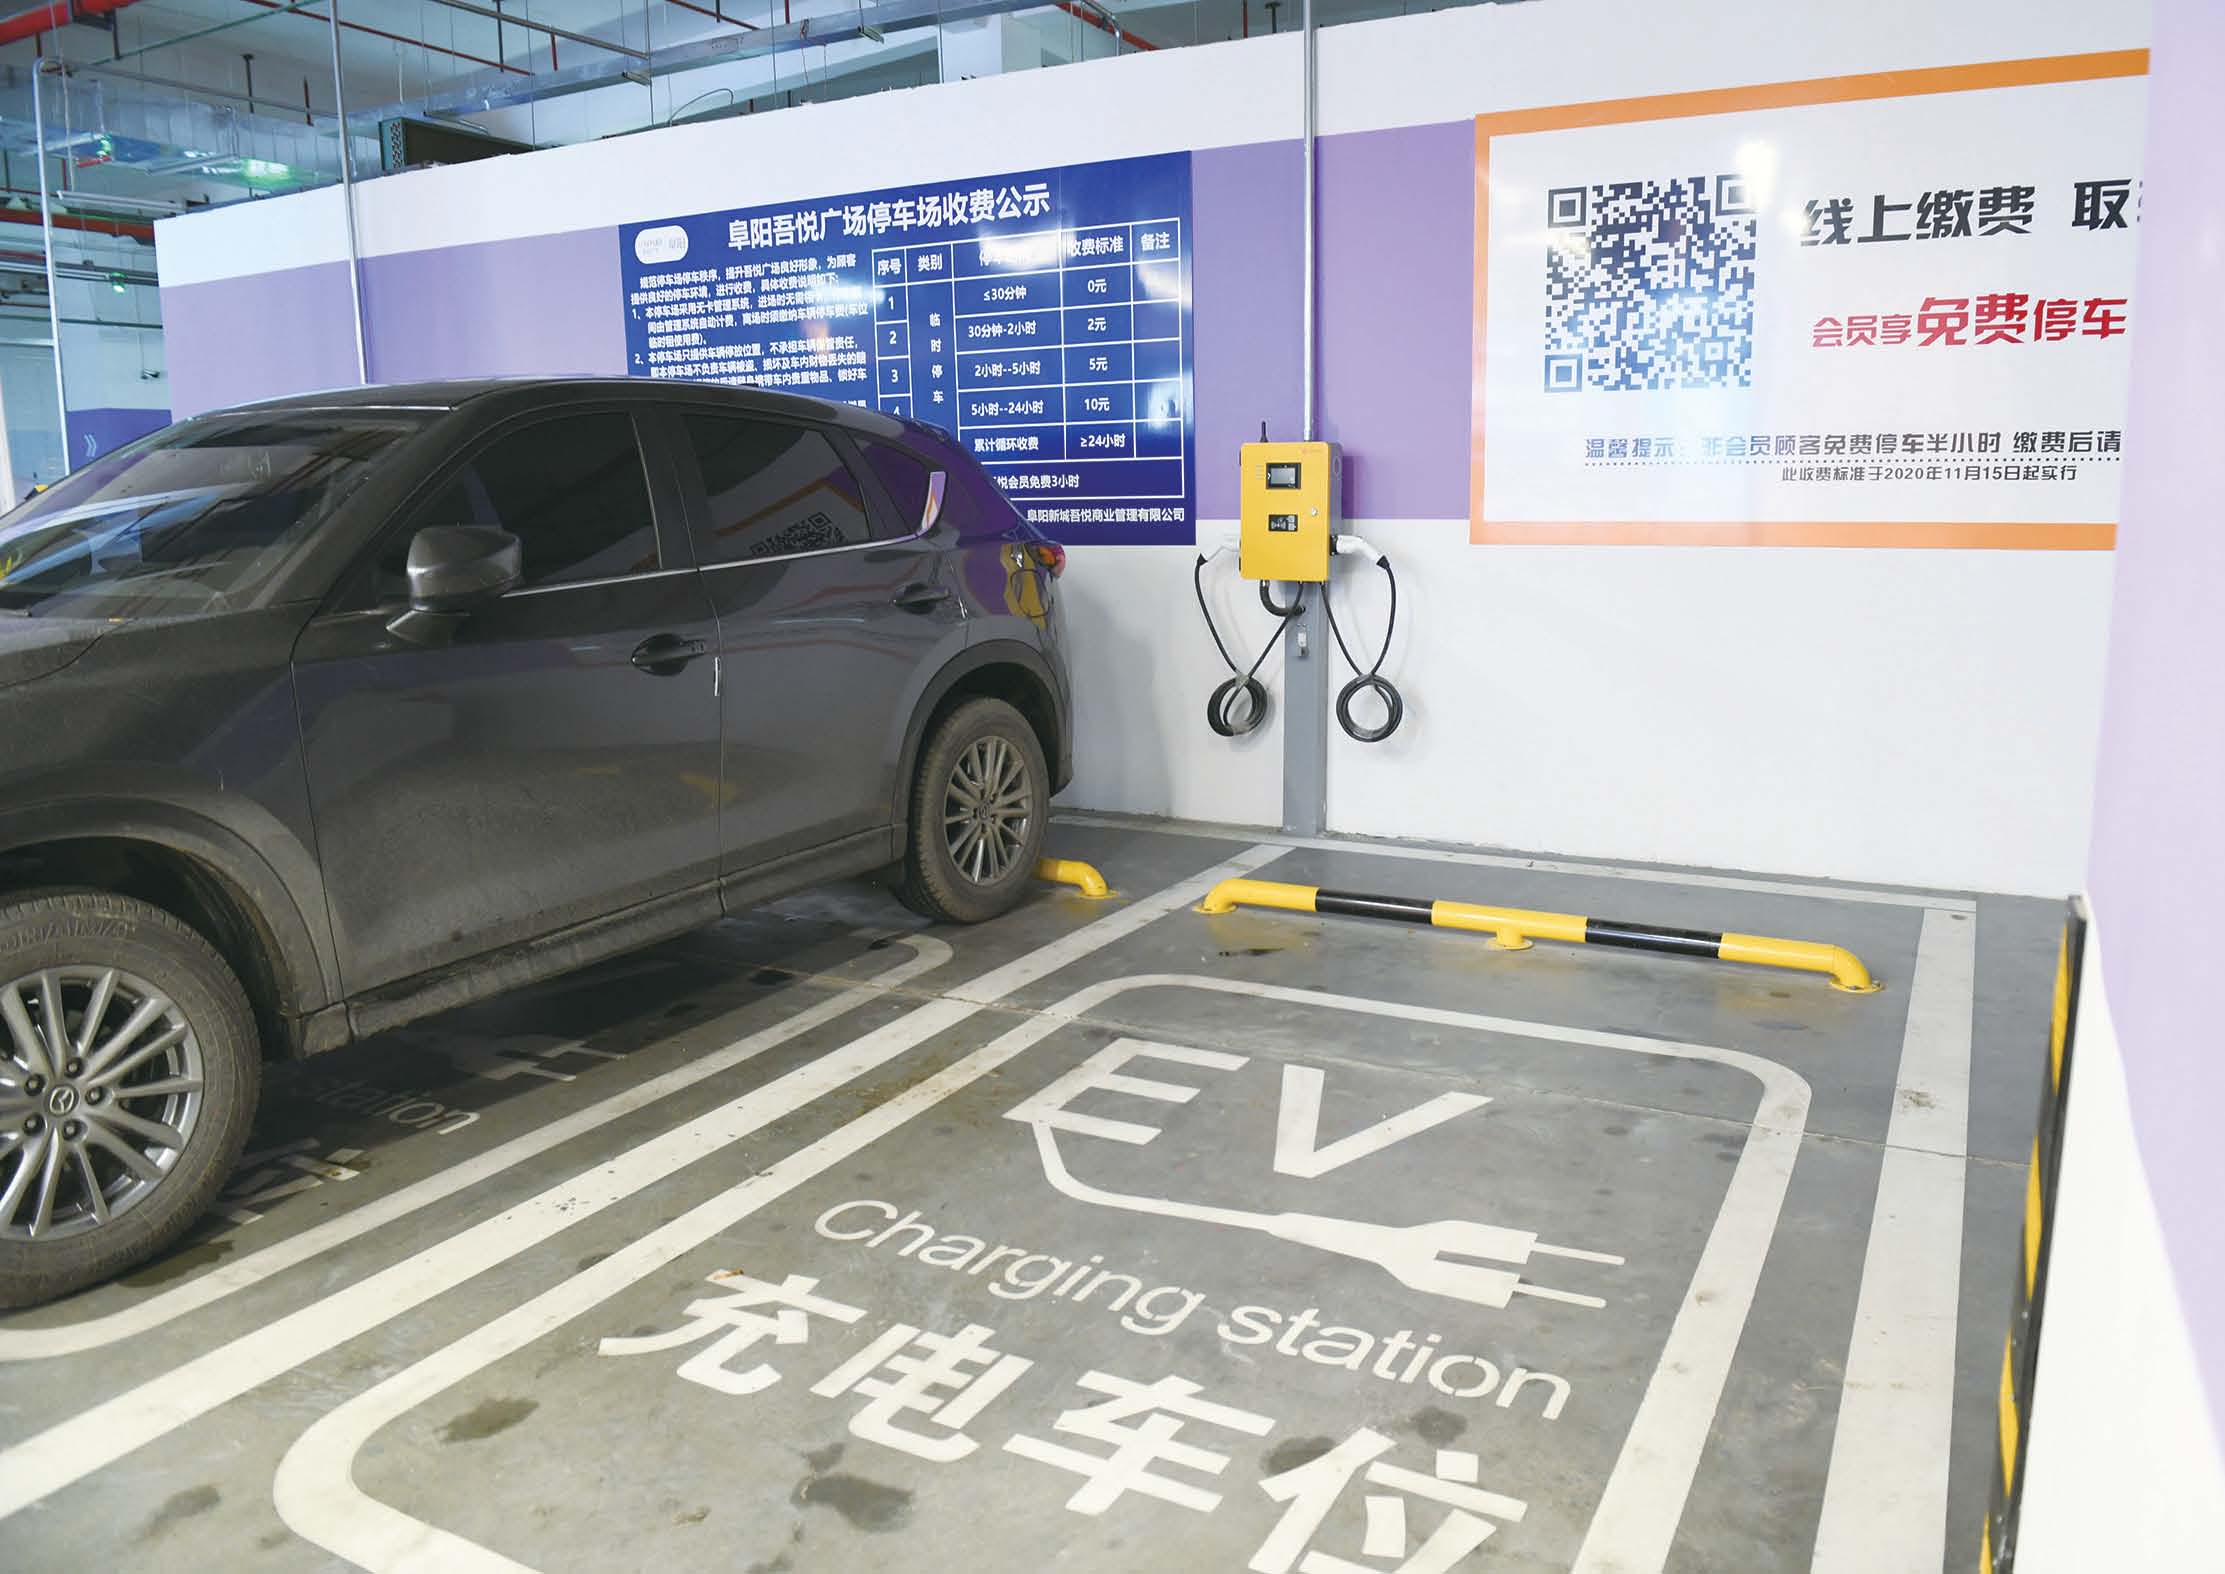 阜阳市充电基础设施基本可以满足电动汽车用户充电需求